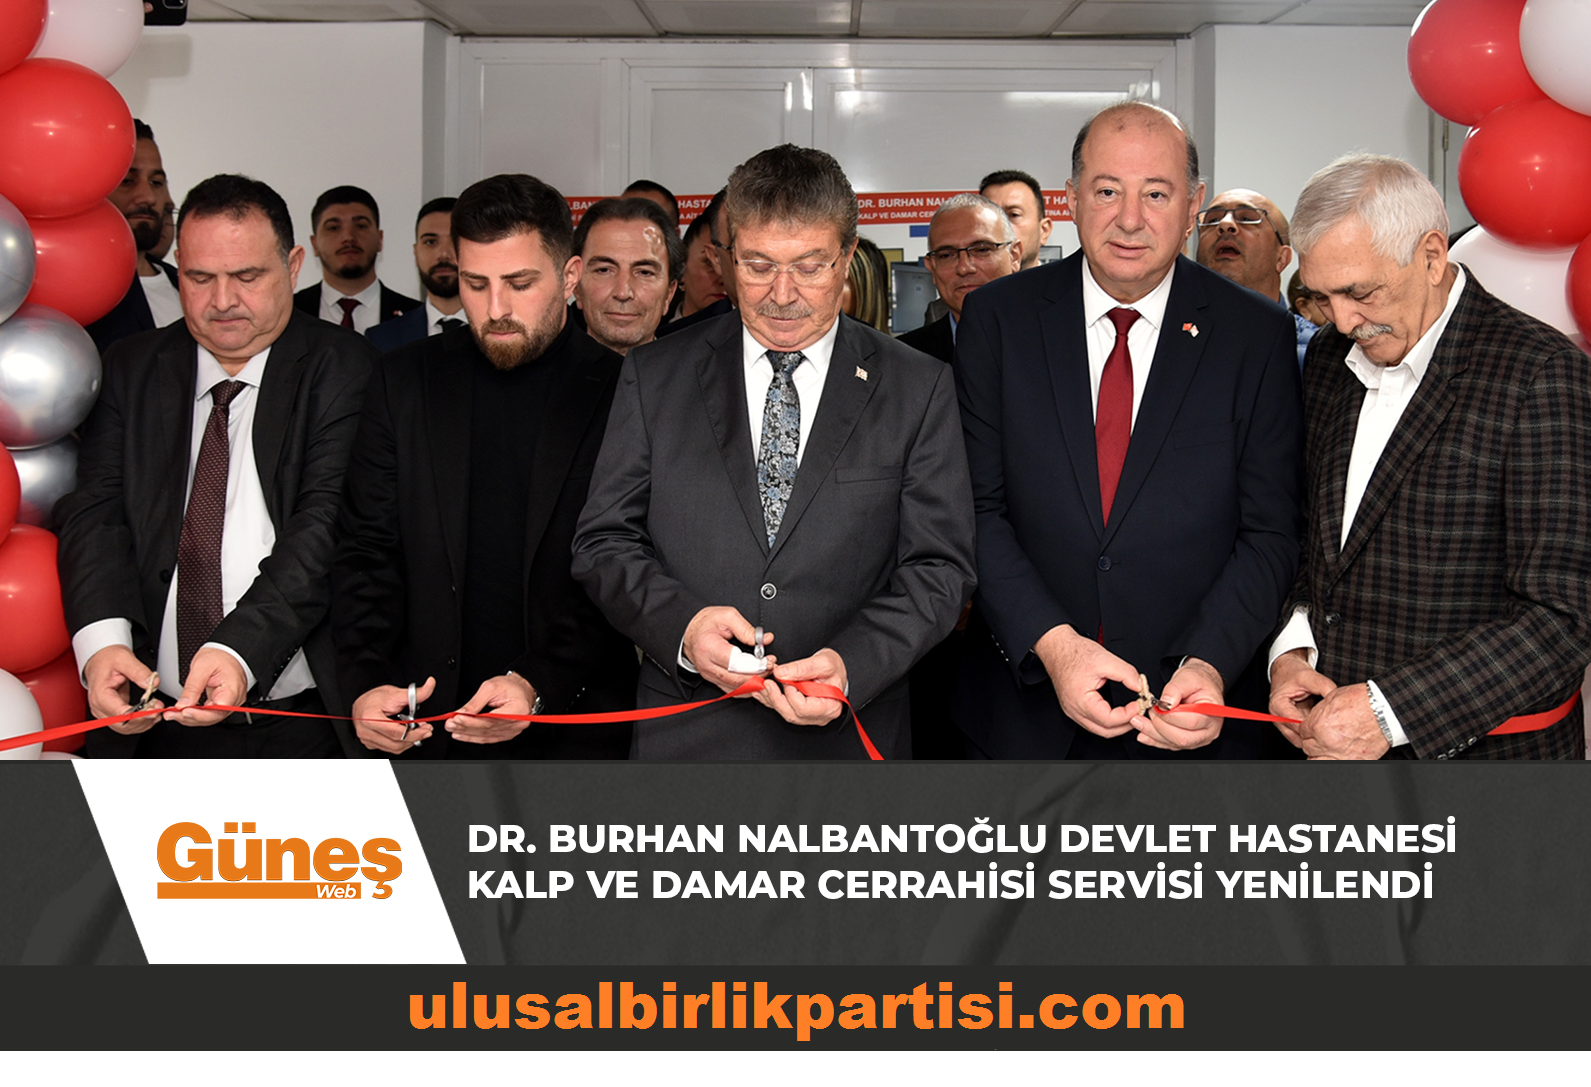 You are currently viewing Dr. Burhan Nalbantoğlu Devlet Hastanesi Kalp ve Damar Cerrahisi servisi yenilendi